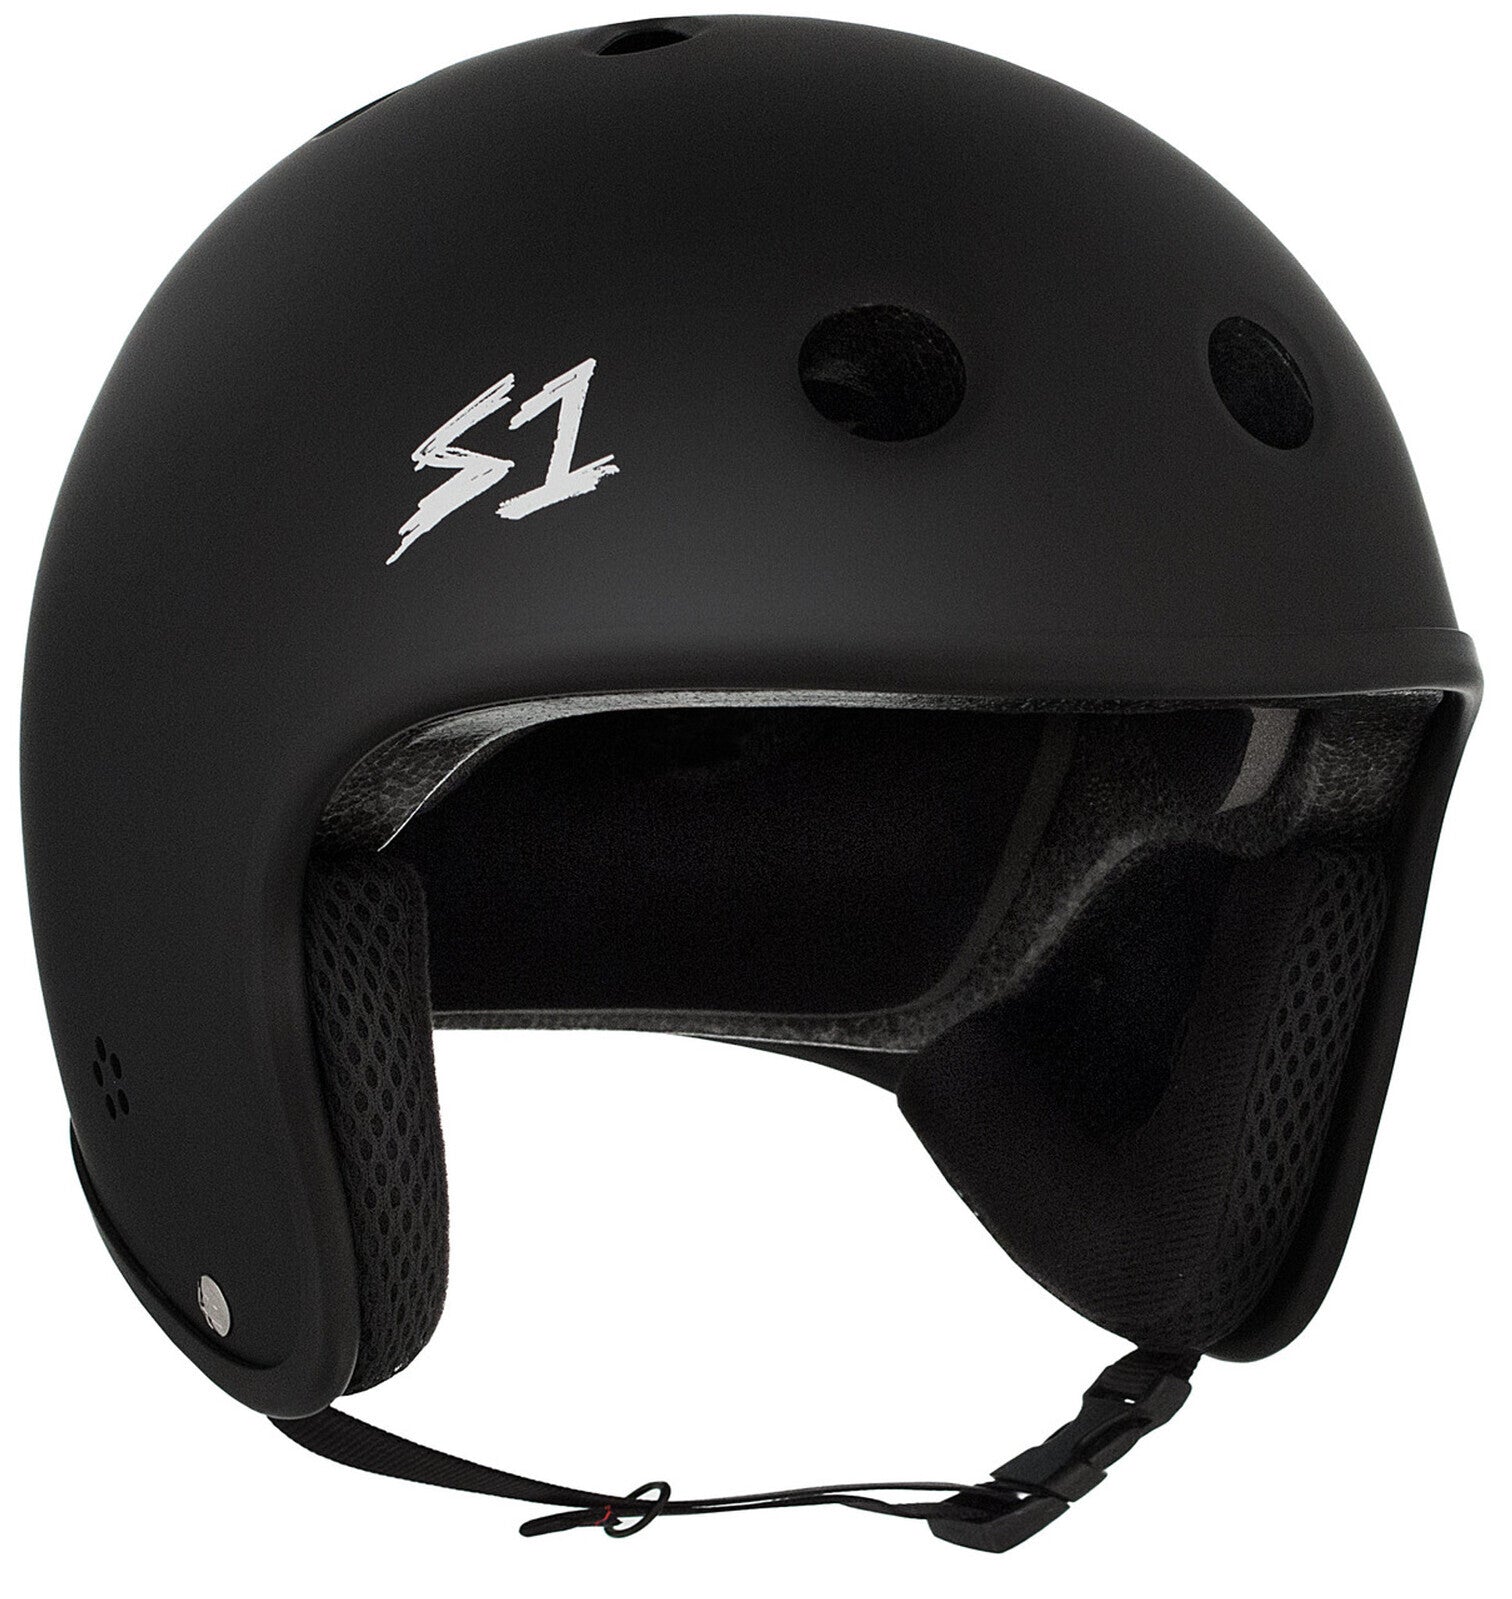 S-One Helmet Retro Lifer Black Matte